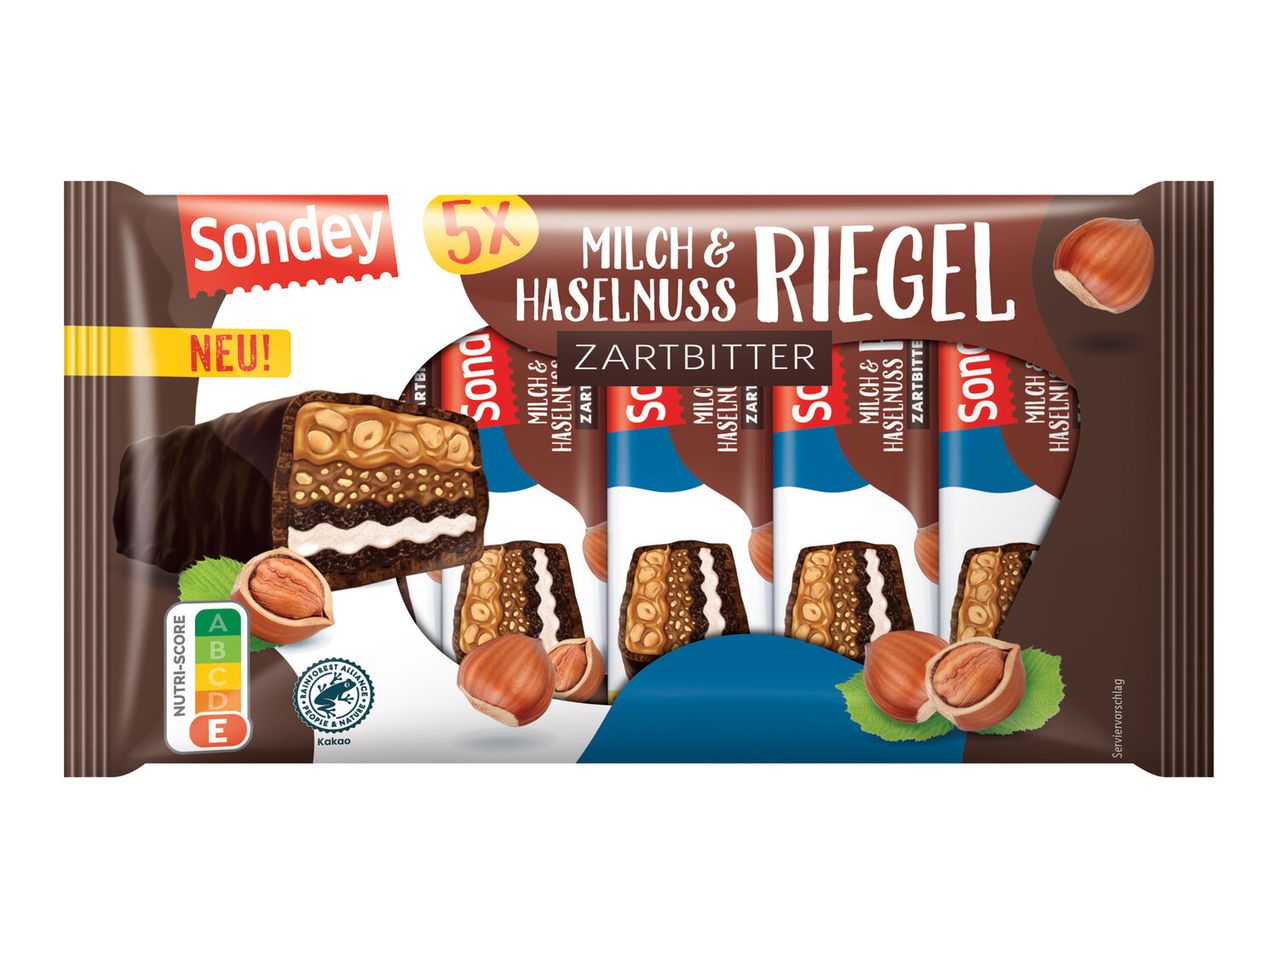 Zartbitter Milch Riegel & Sondey Haselnuss